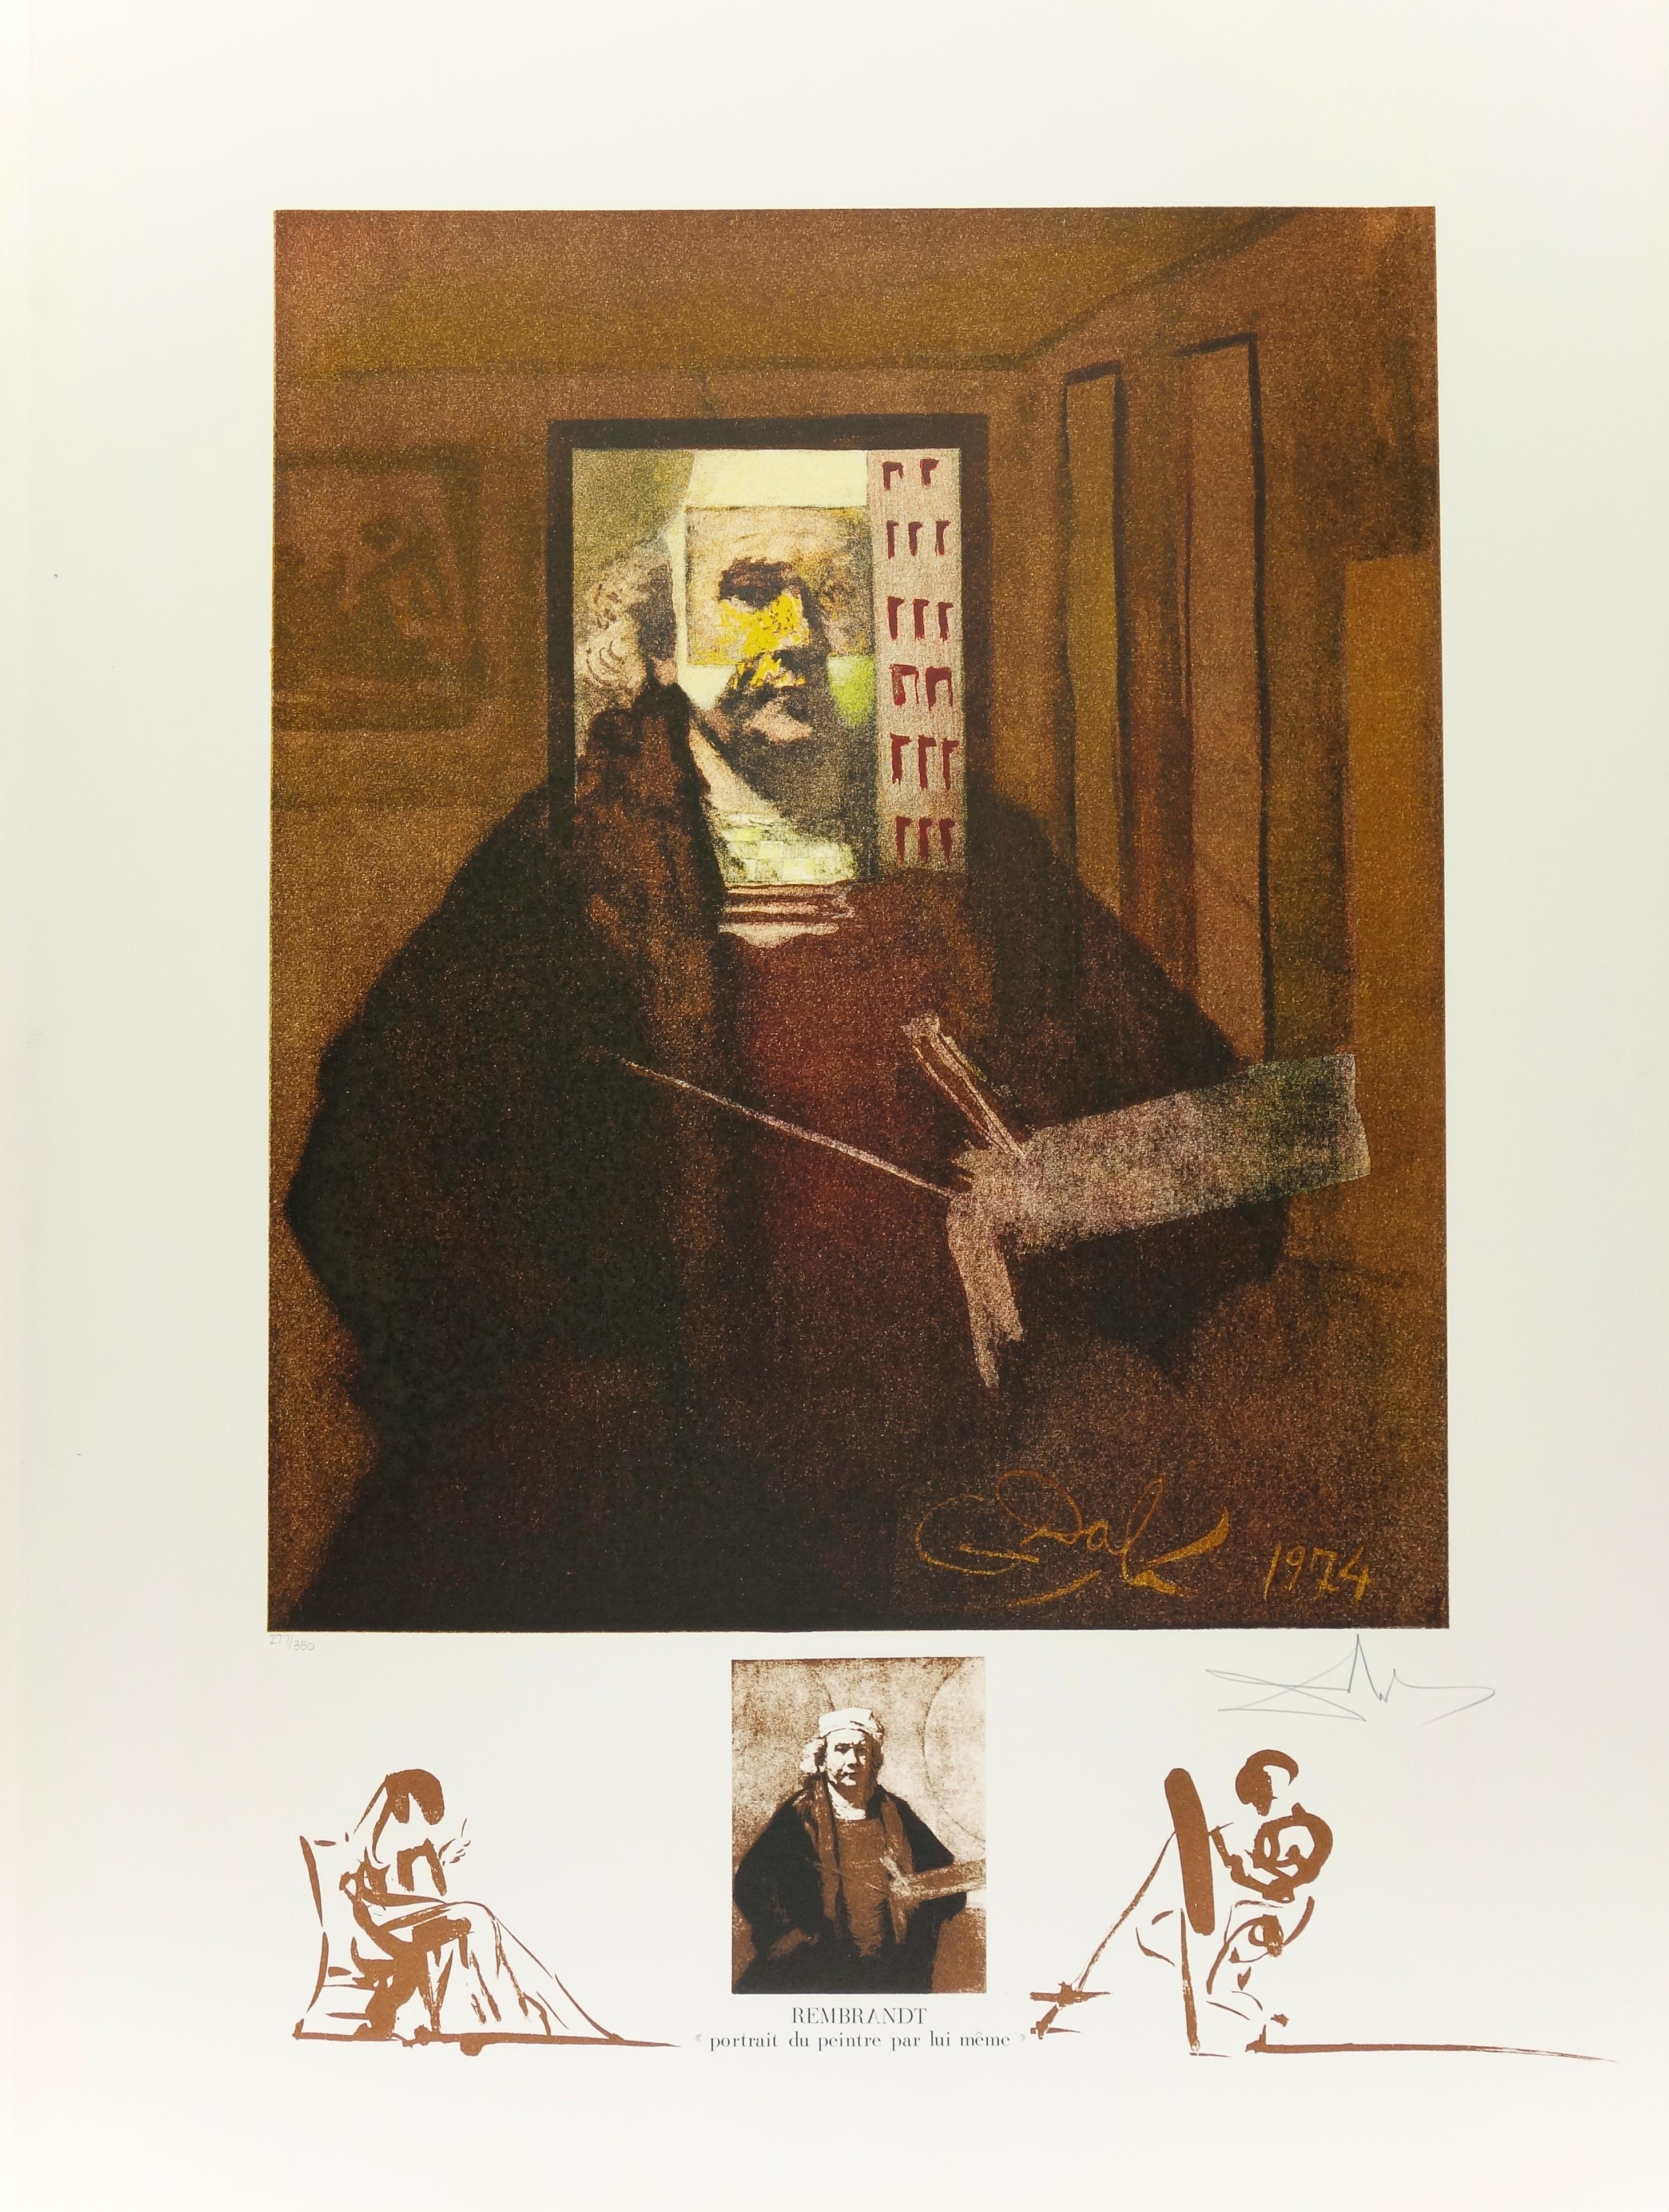 Salvador Dalí Abstract Print - Rembrandt, Portrait du Peintre par lui-meme from Changes in Great Masterpieces